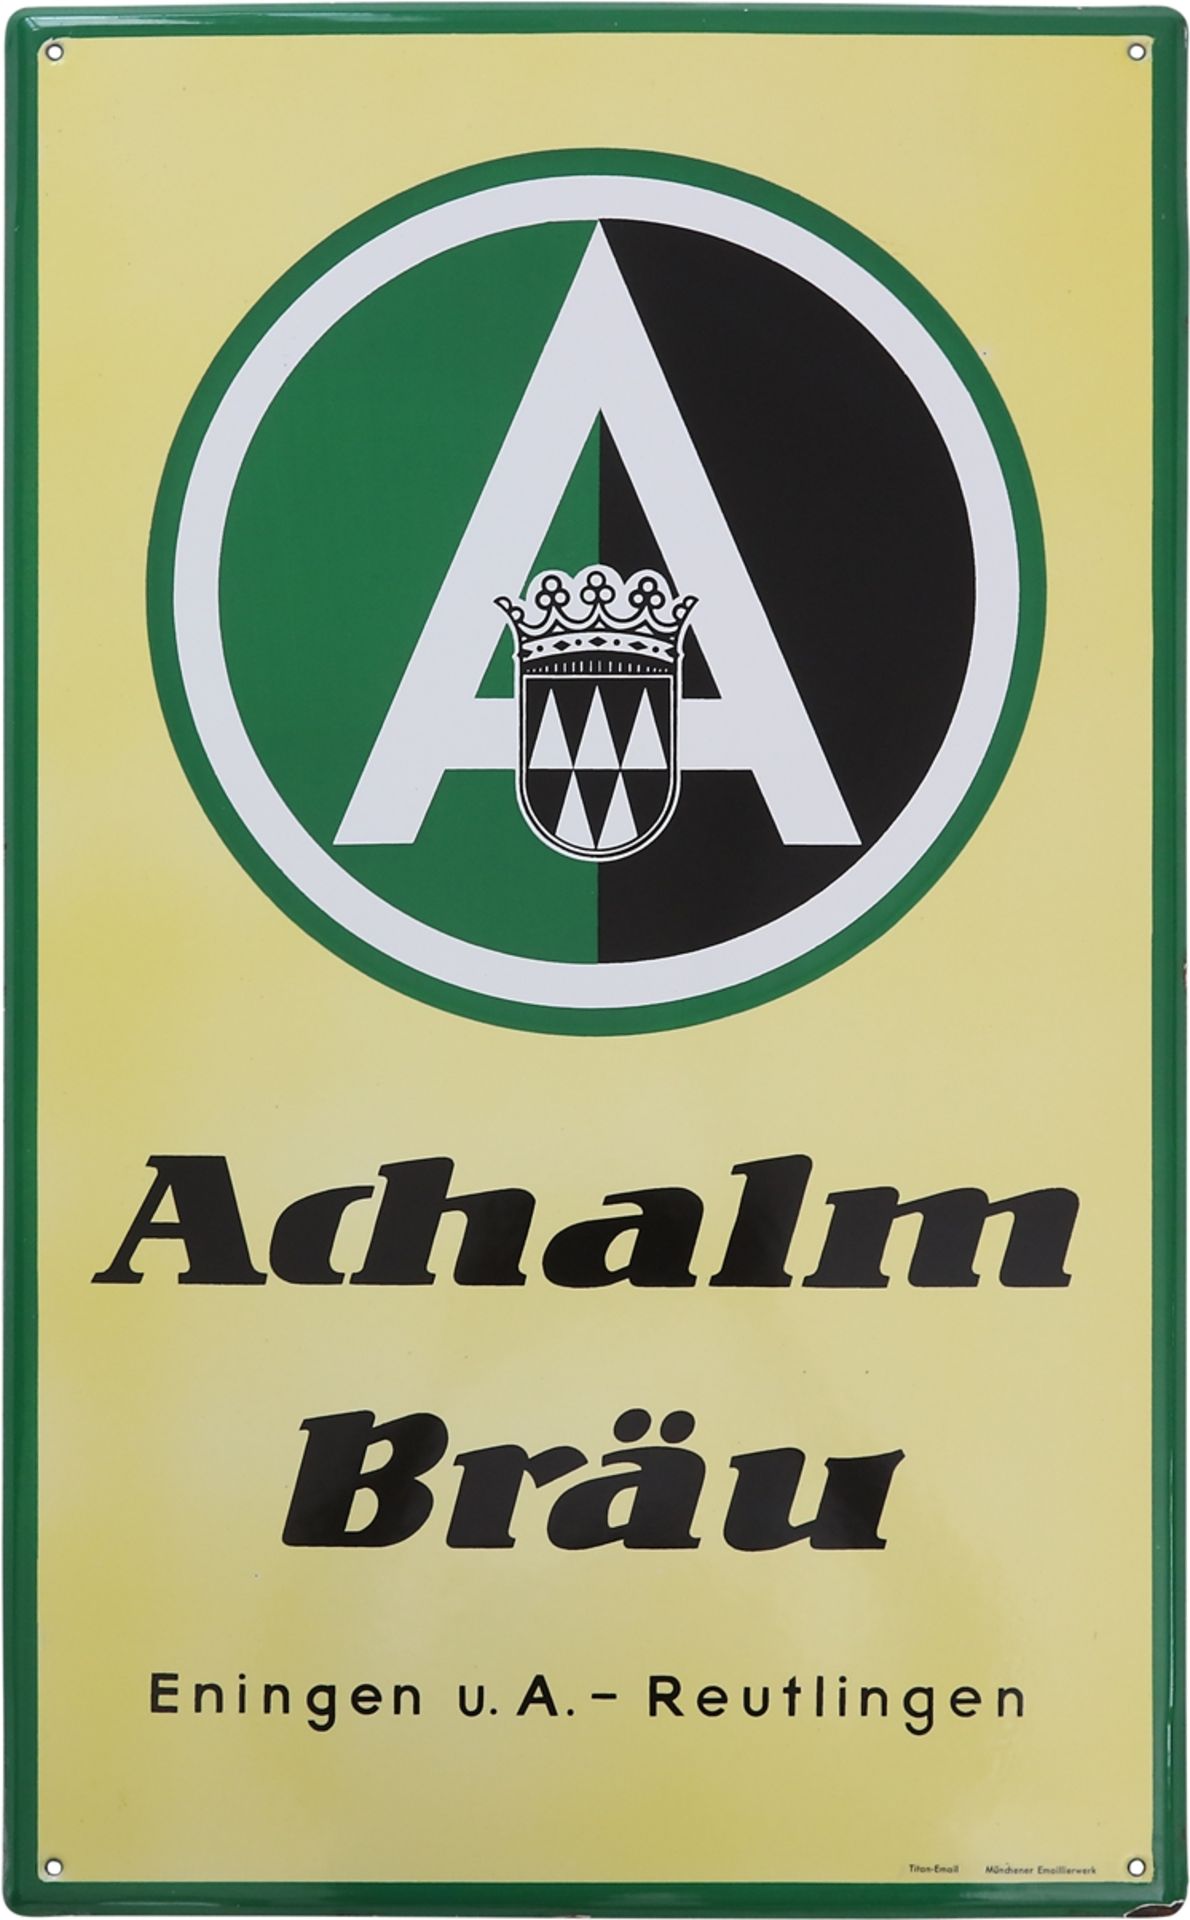 Emailschild Achalm Bräu, Eningen u.A. -  Reutlingen, um 1950